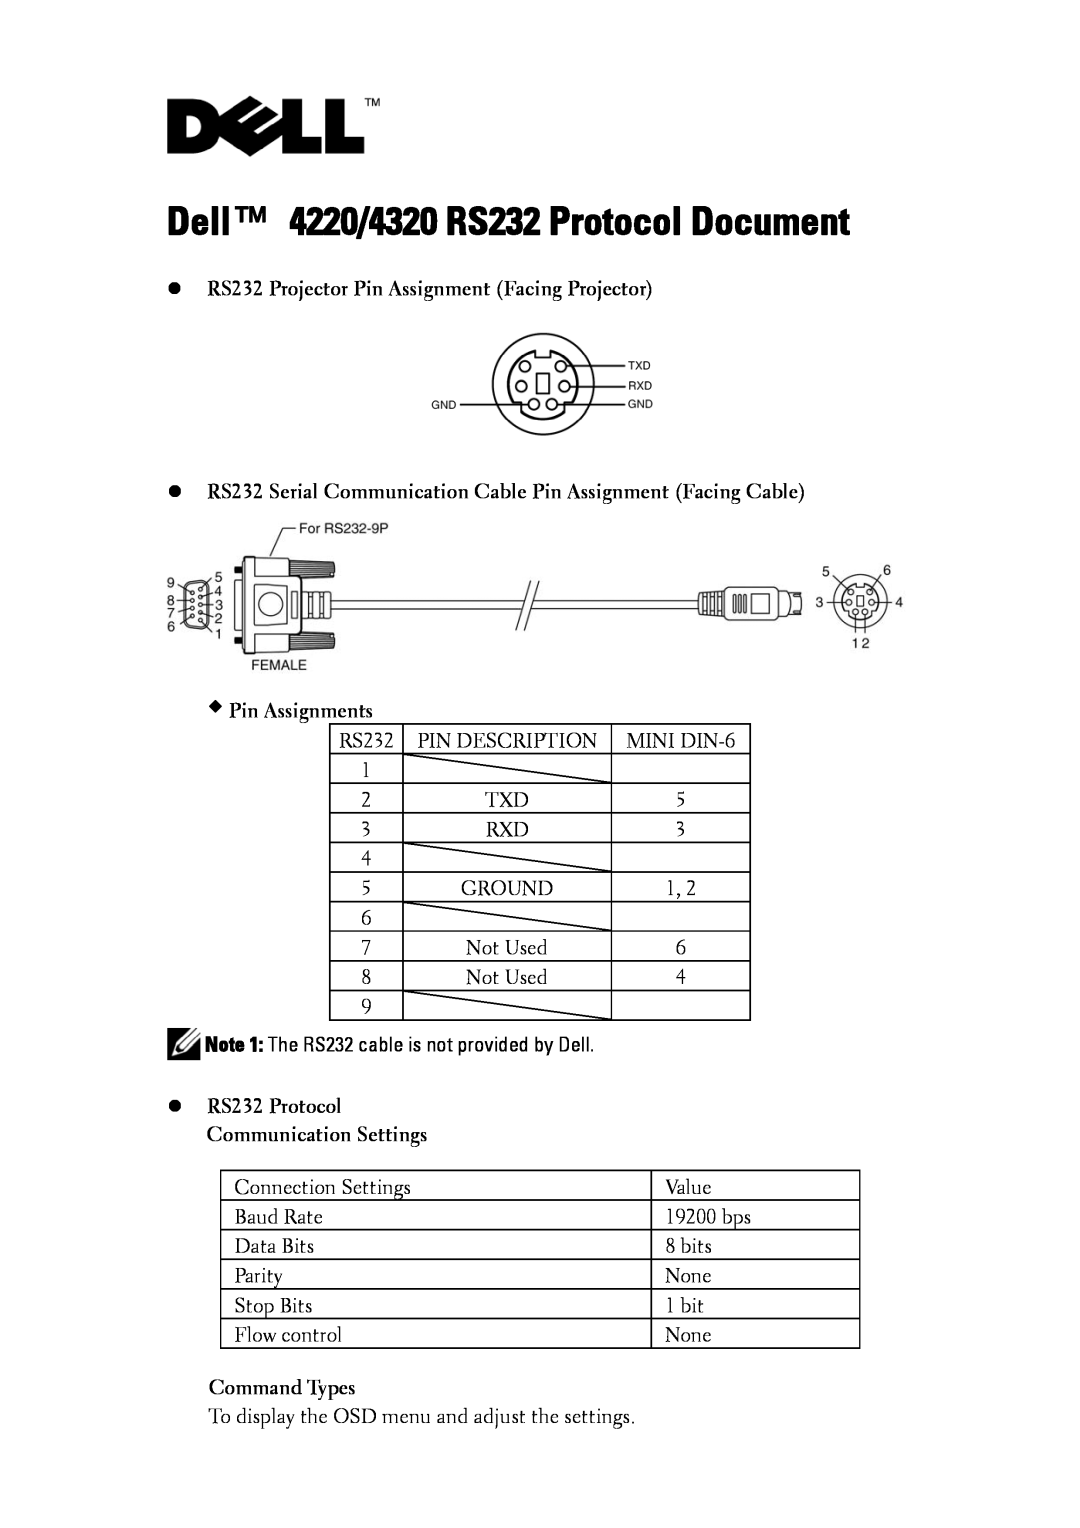 Dell 4220 manual Installation Guide, Dell PowerEdge, Guide dinstallation Installationsanleitung, 設置ガイド 